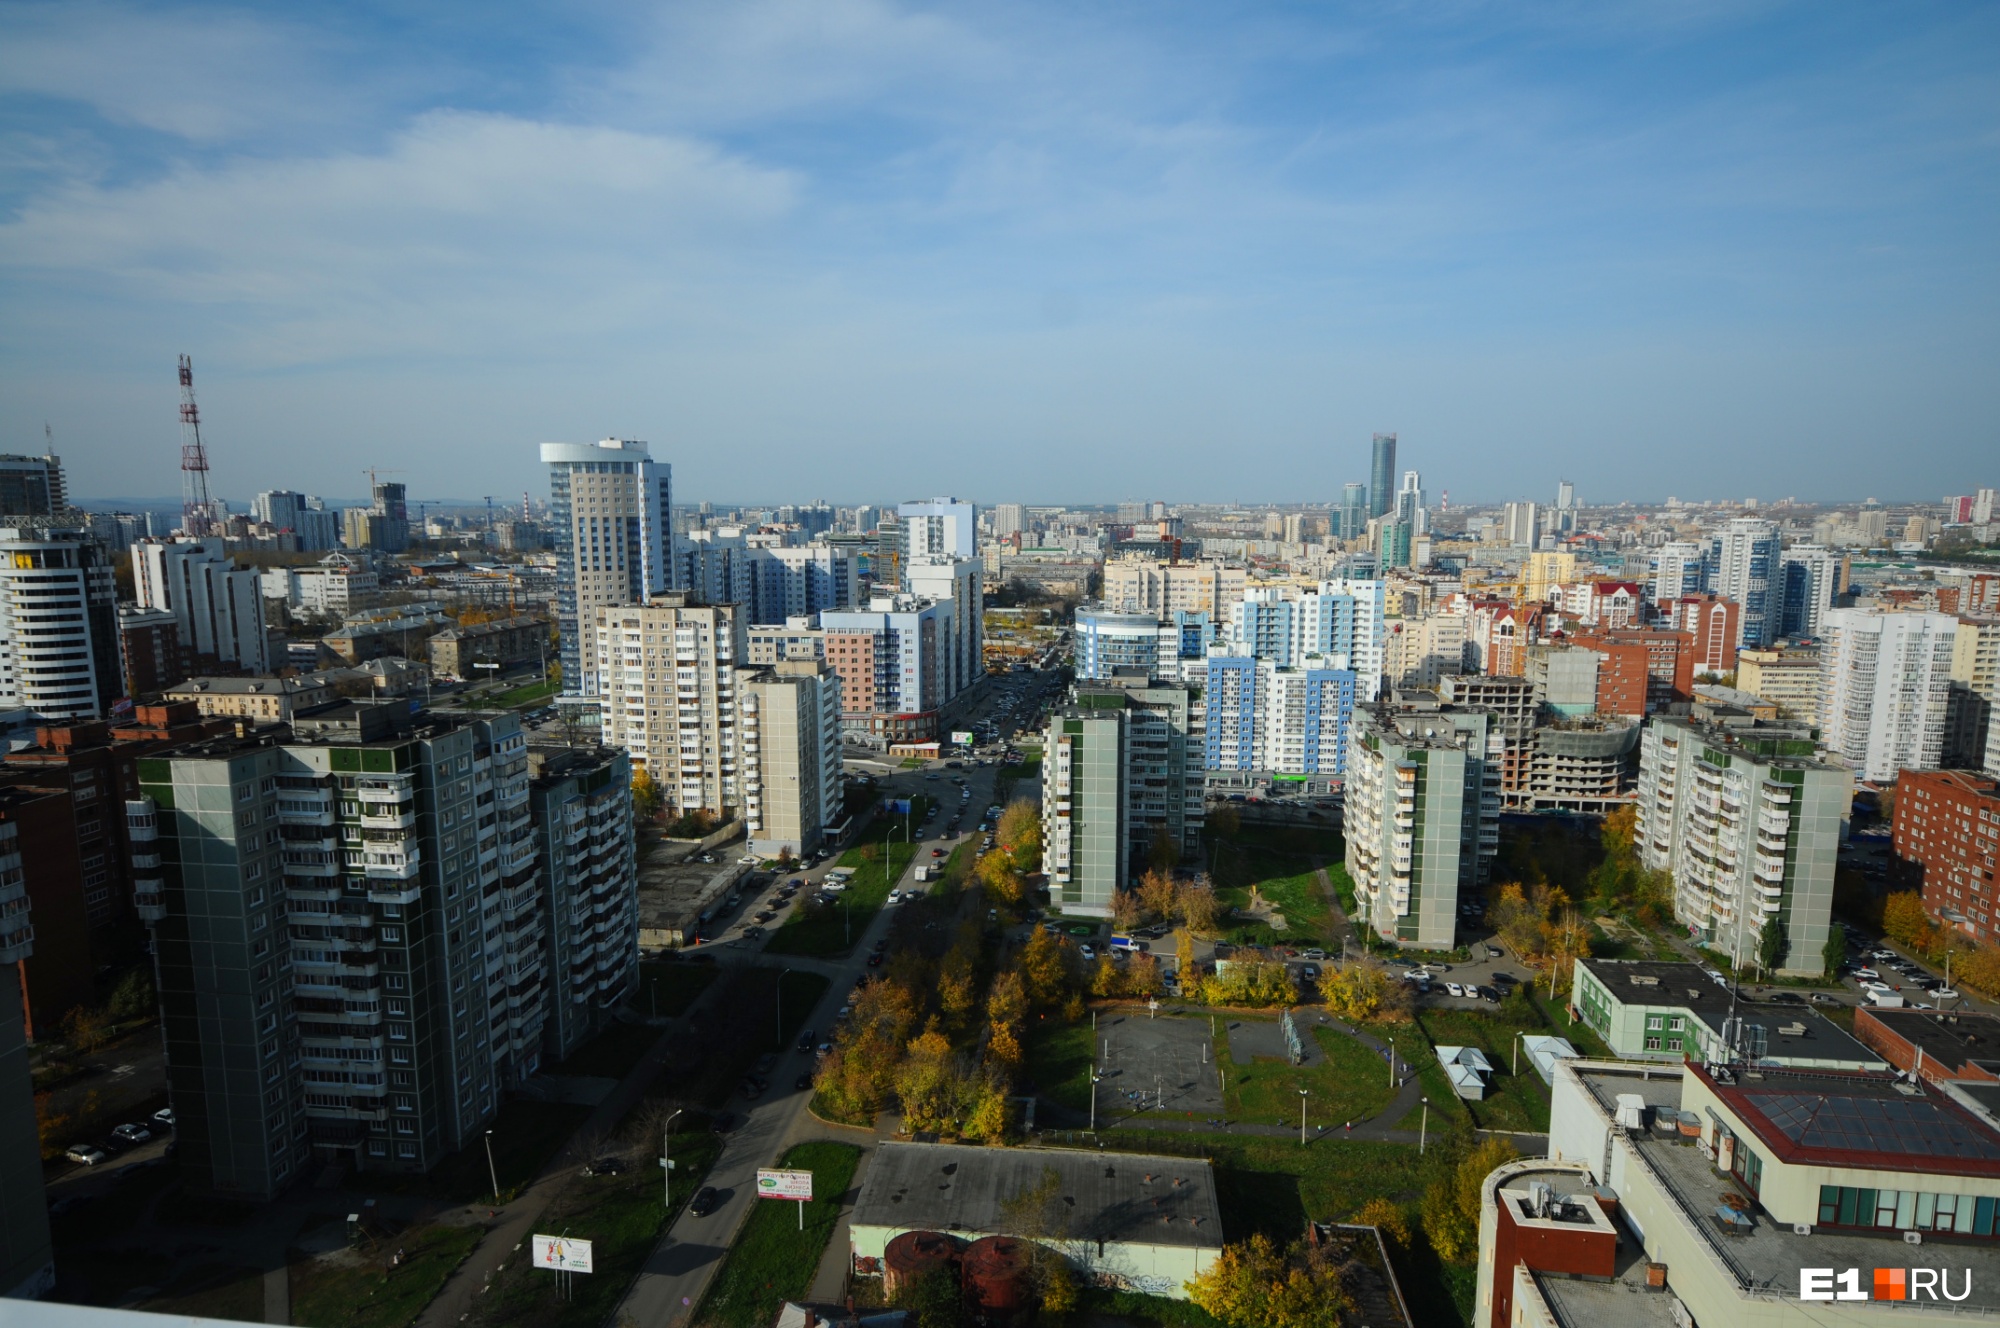 Из десяти крупнейших застройщиков Екатеринбурга больше всего квартир продали «Атомстройкомплекс», «Кортрос» и ЛСР